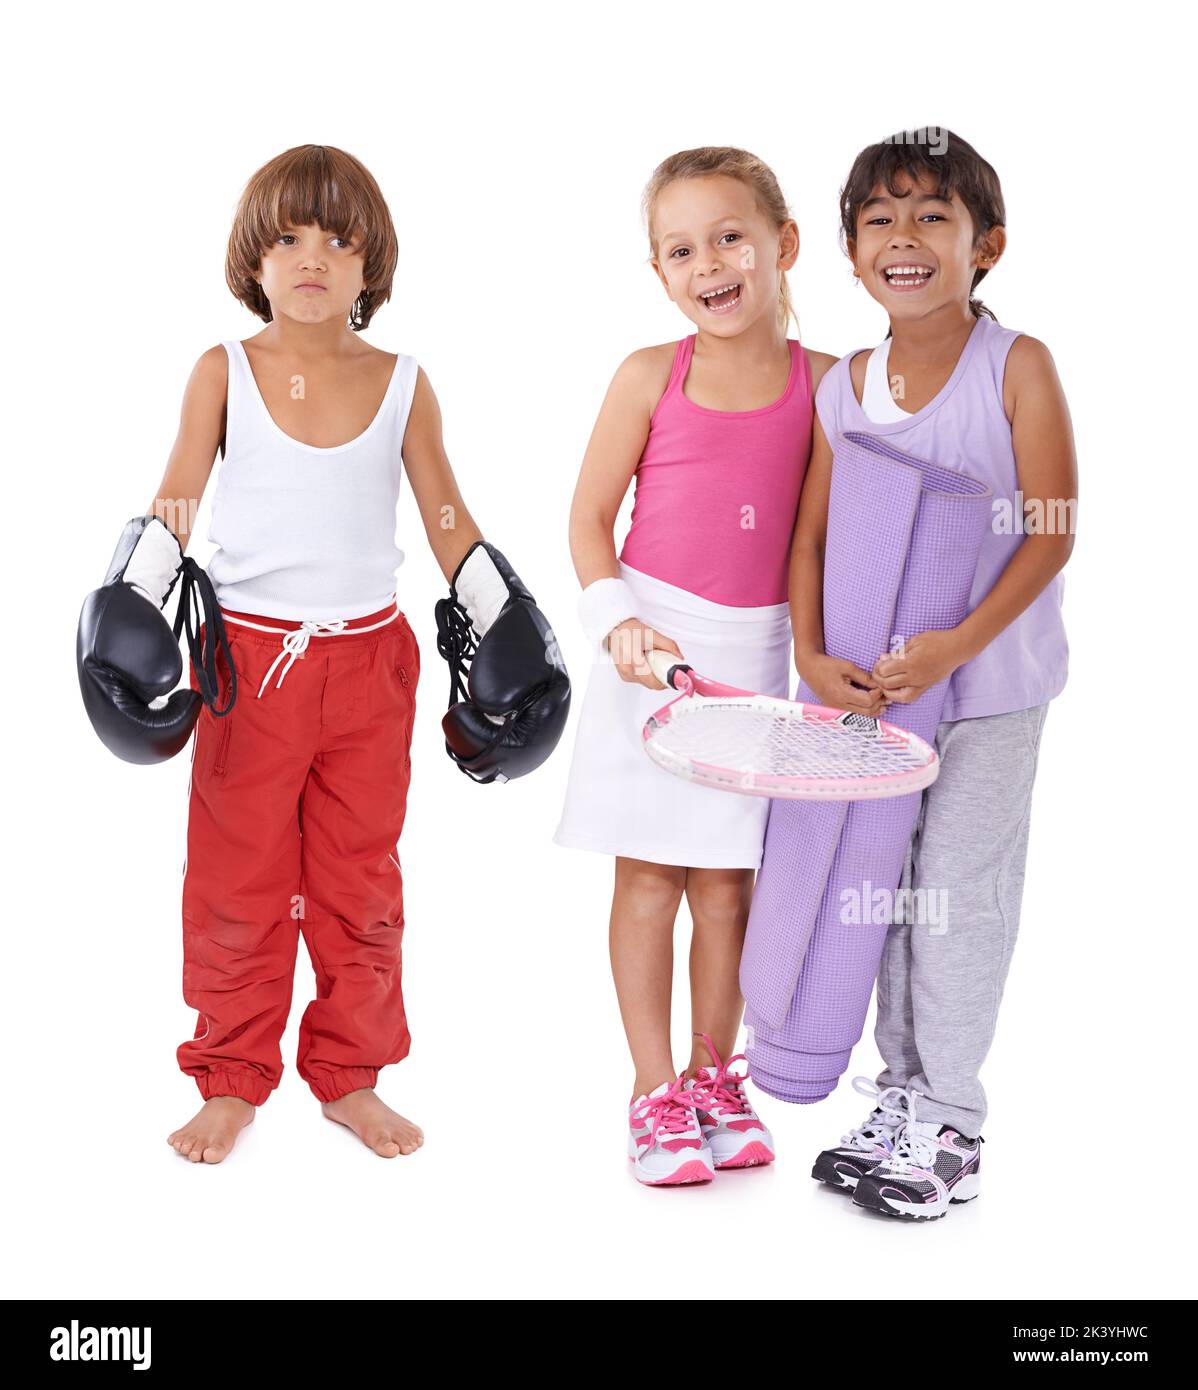 Tutti hanno una passione individuale. Un gruppo di tre bambini in vari abbigliamento sportivo. Foto Stock